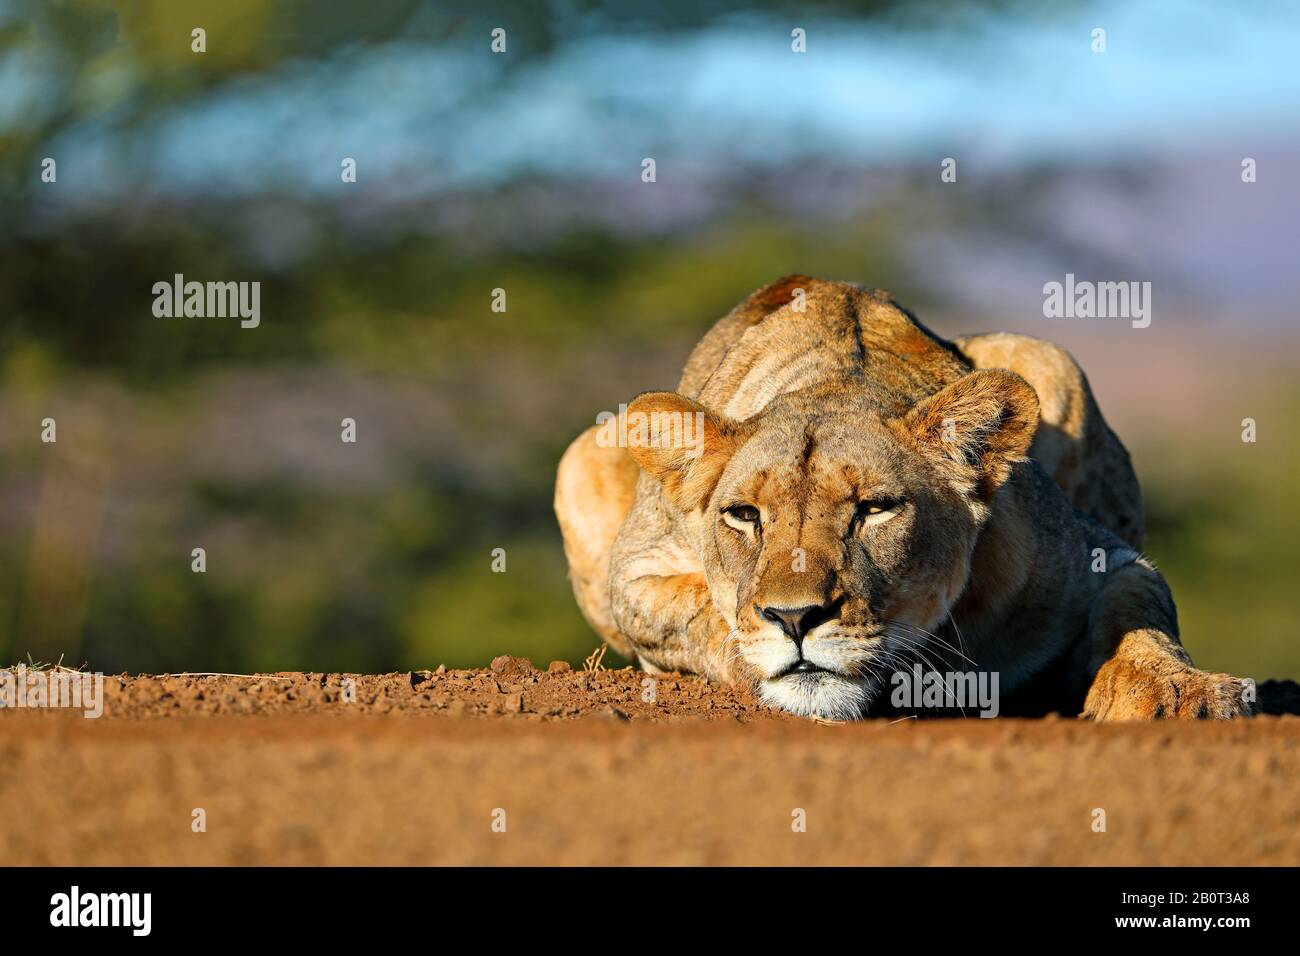 Lion (Panthera leo), lioness se repose sur un chemin, vue de face, Afrique du Sud, KwaZulu-Natal, Zimanga Game Reserve Banque D'Images